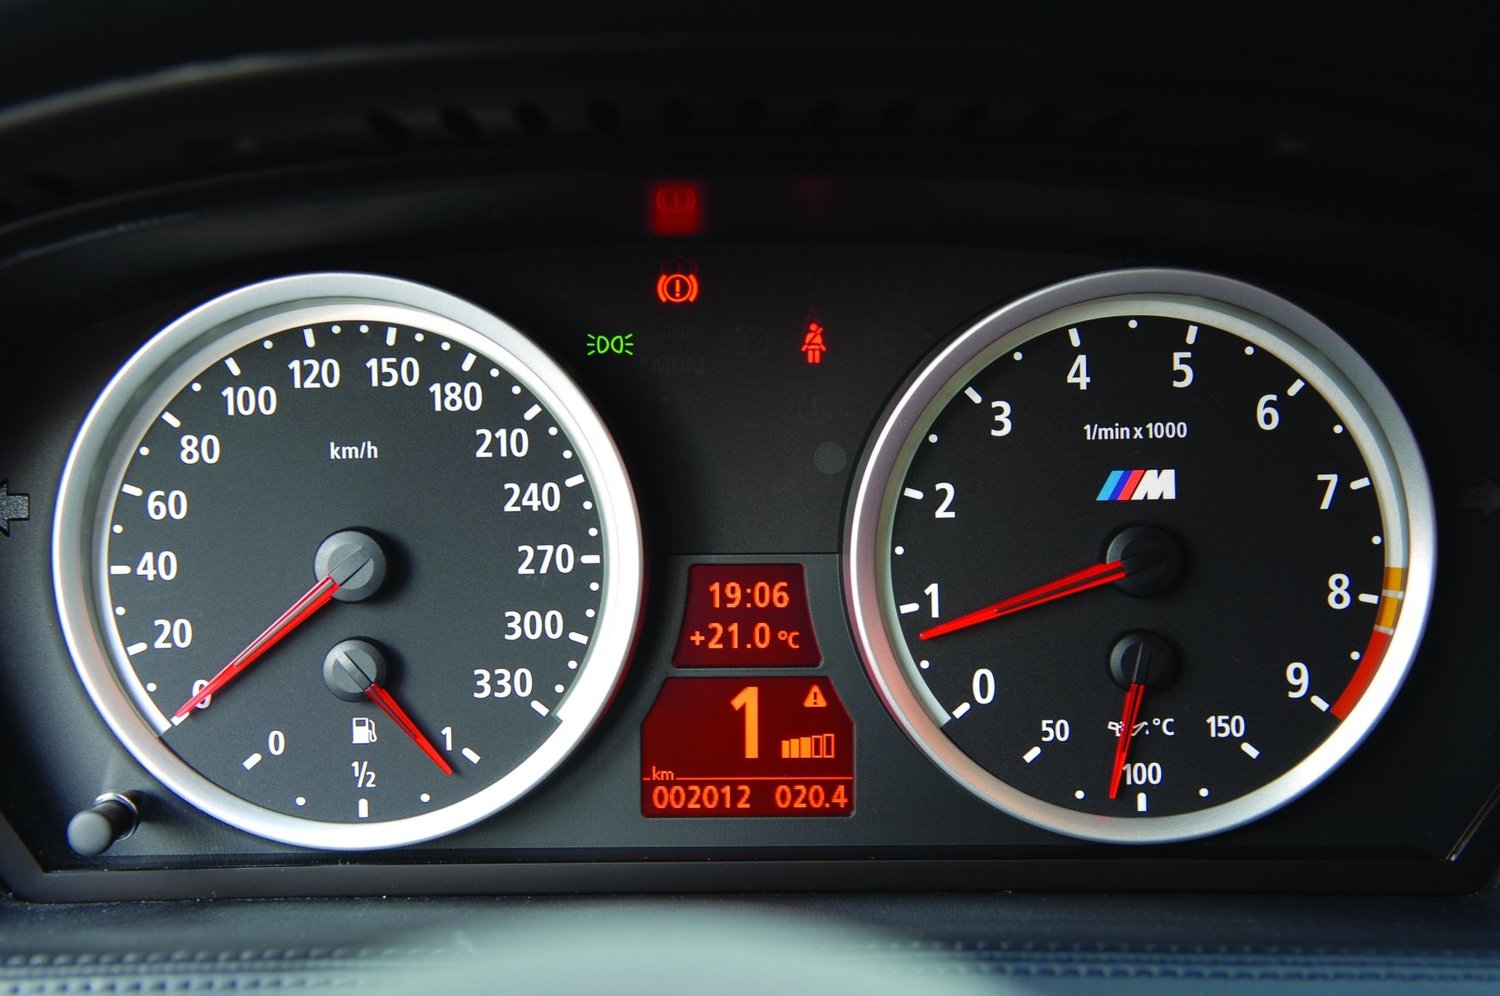 кабриолет BMW M6 2005 - 2010г выпуска модификация 5.0 MT (507 л.с.)